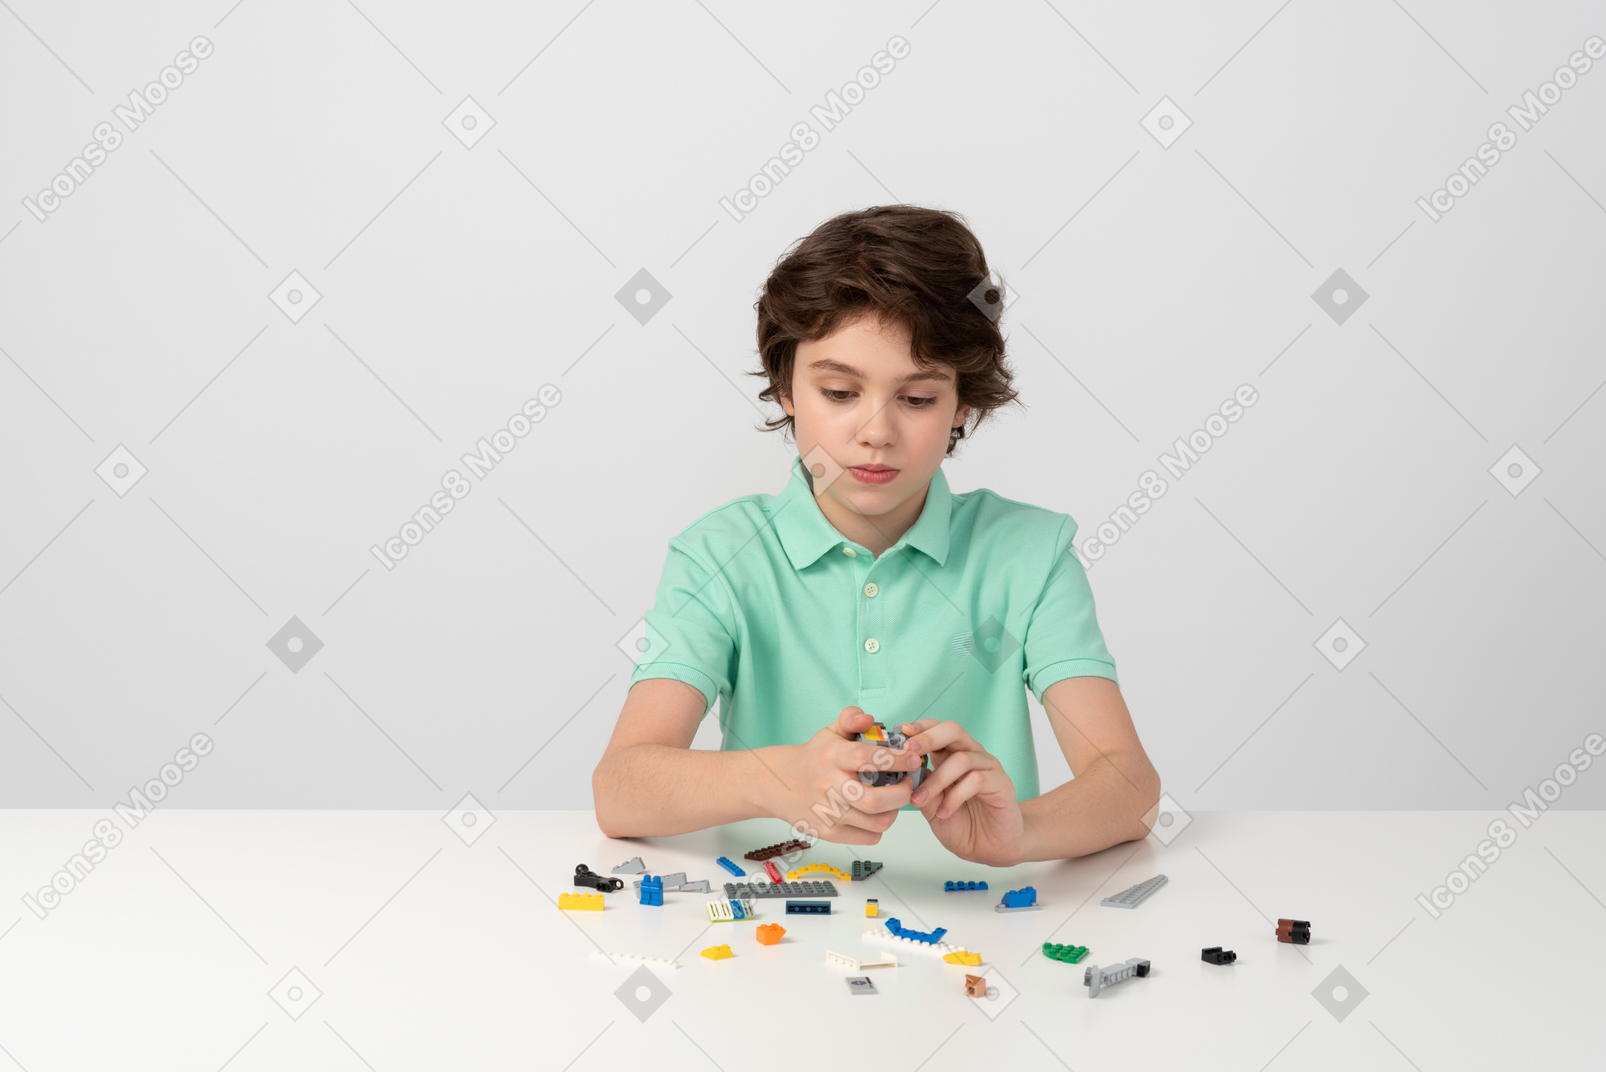 Un adolescente jugando con un juego de construcción.